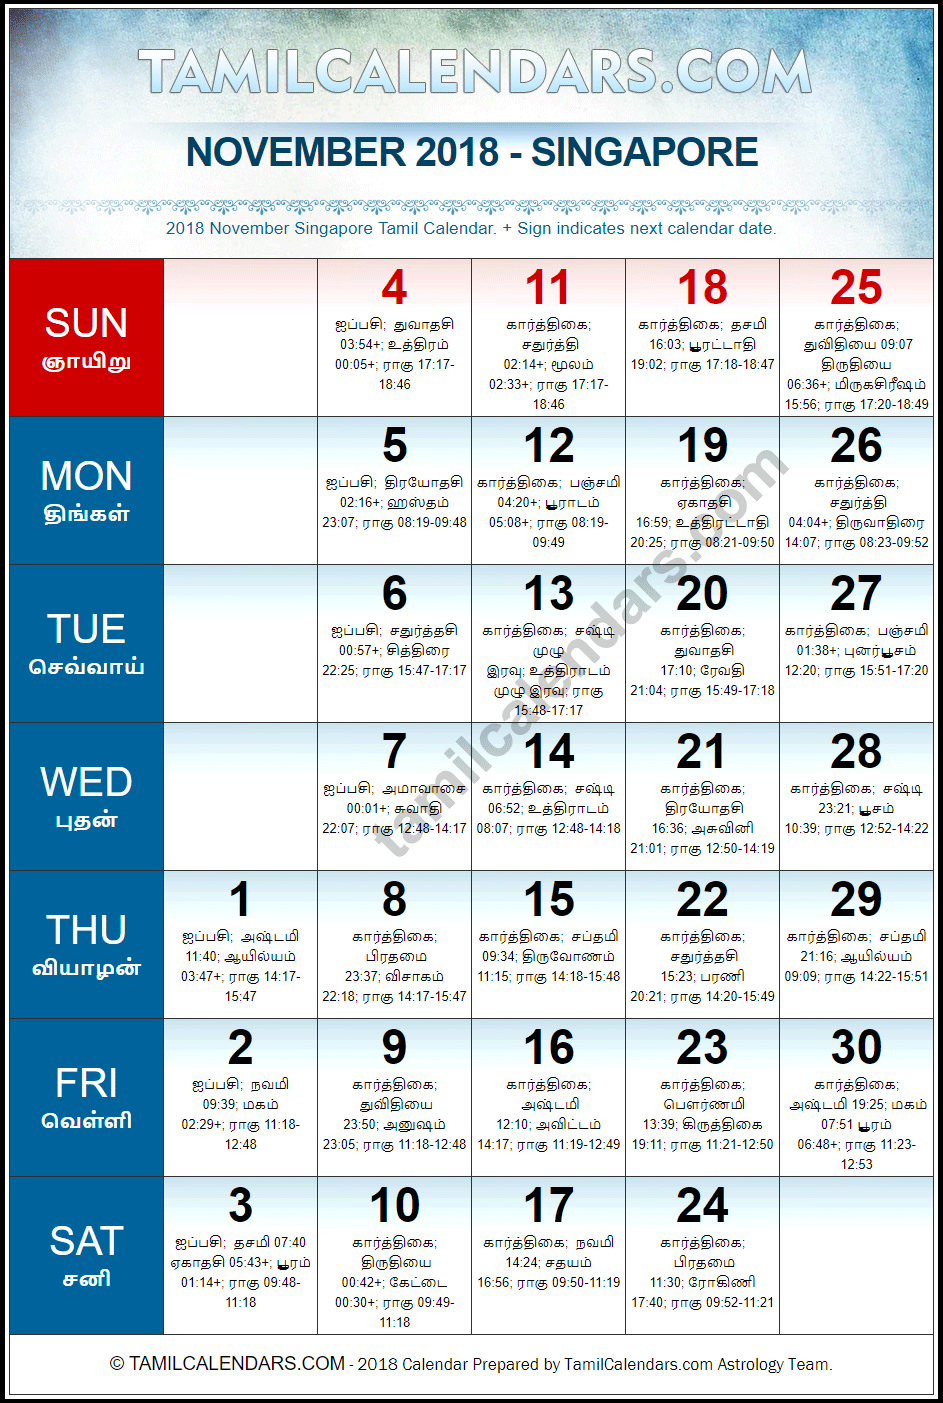 November 2018 Tamil Calendar for Singapore